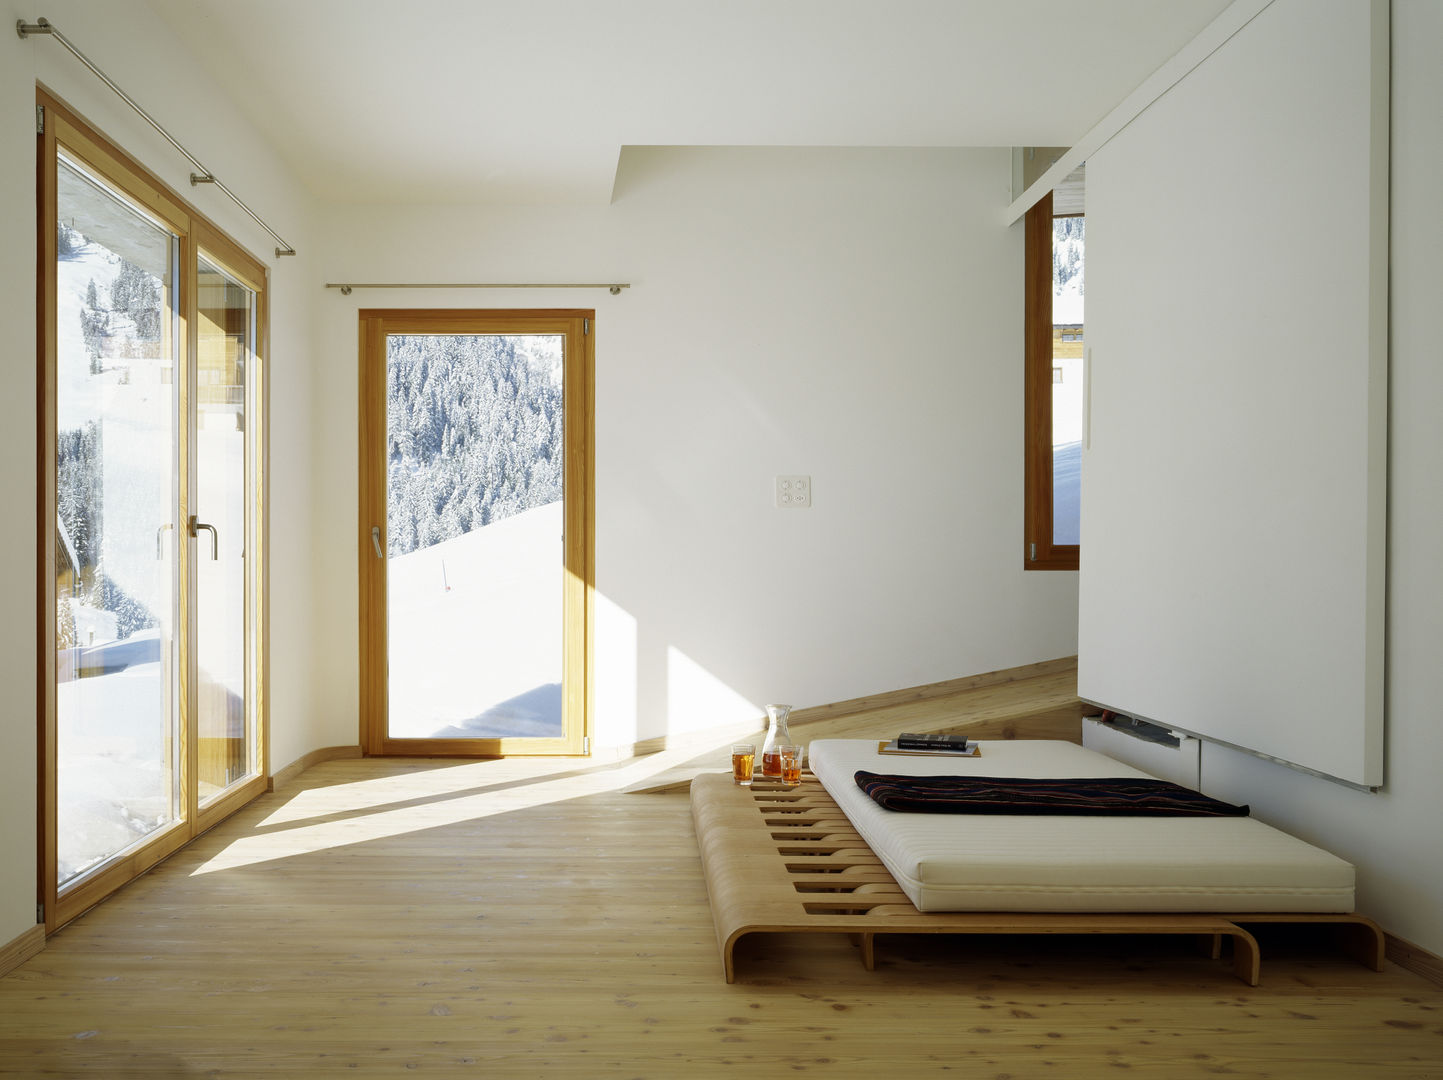 Ferienhaus in den Bündner Alpen, Drexler Architekten AG Drexler Architekten AG Rooms